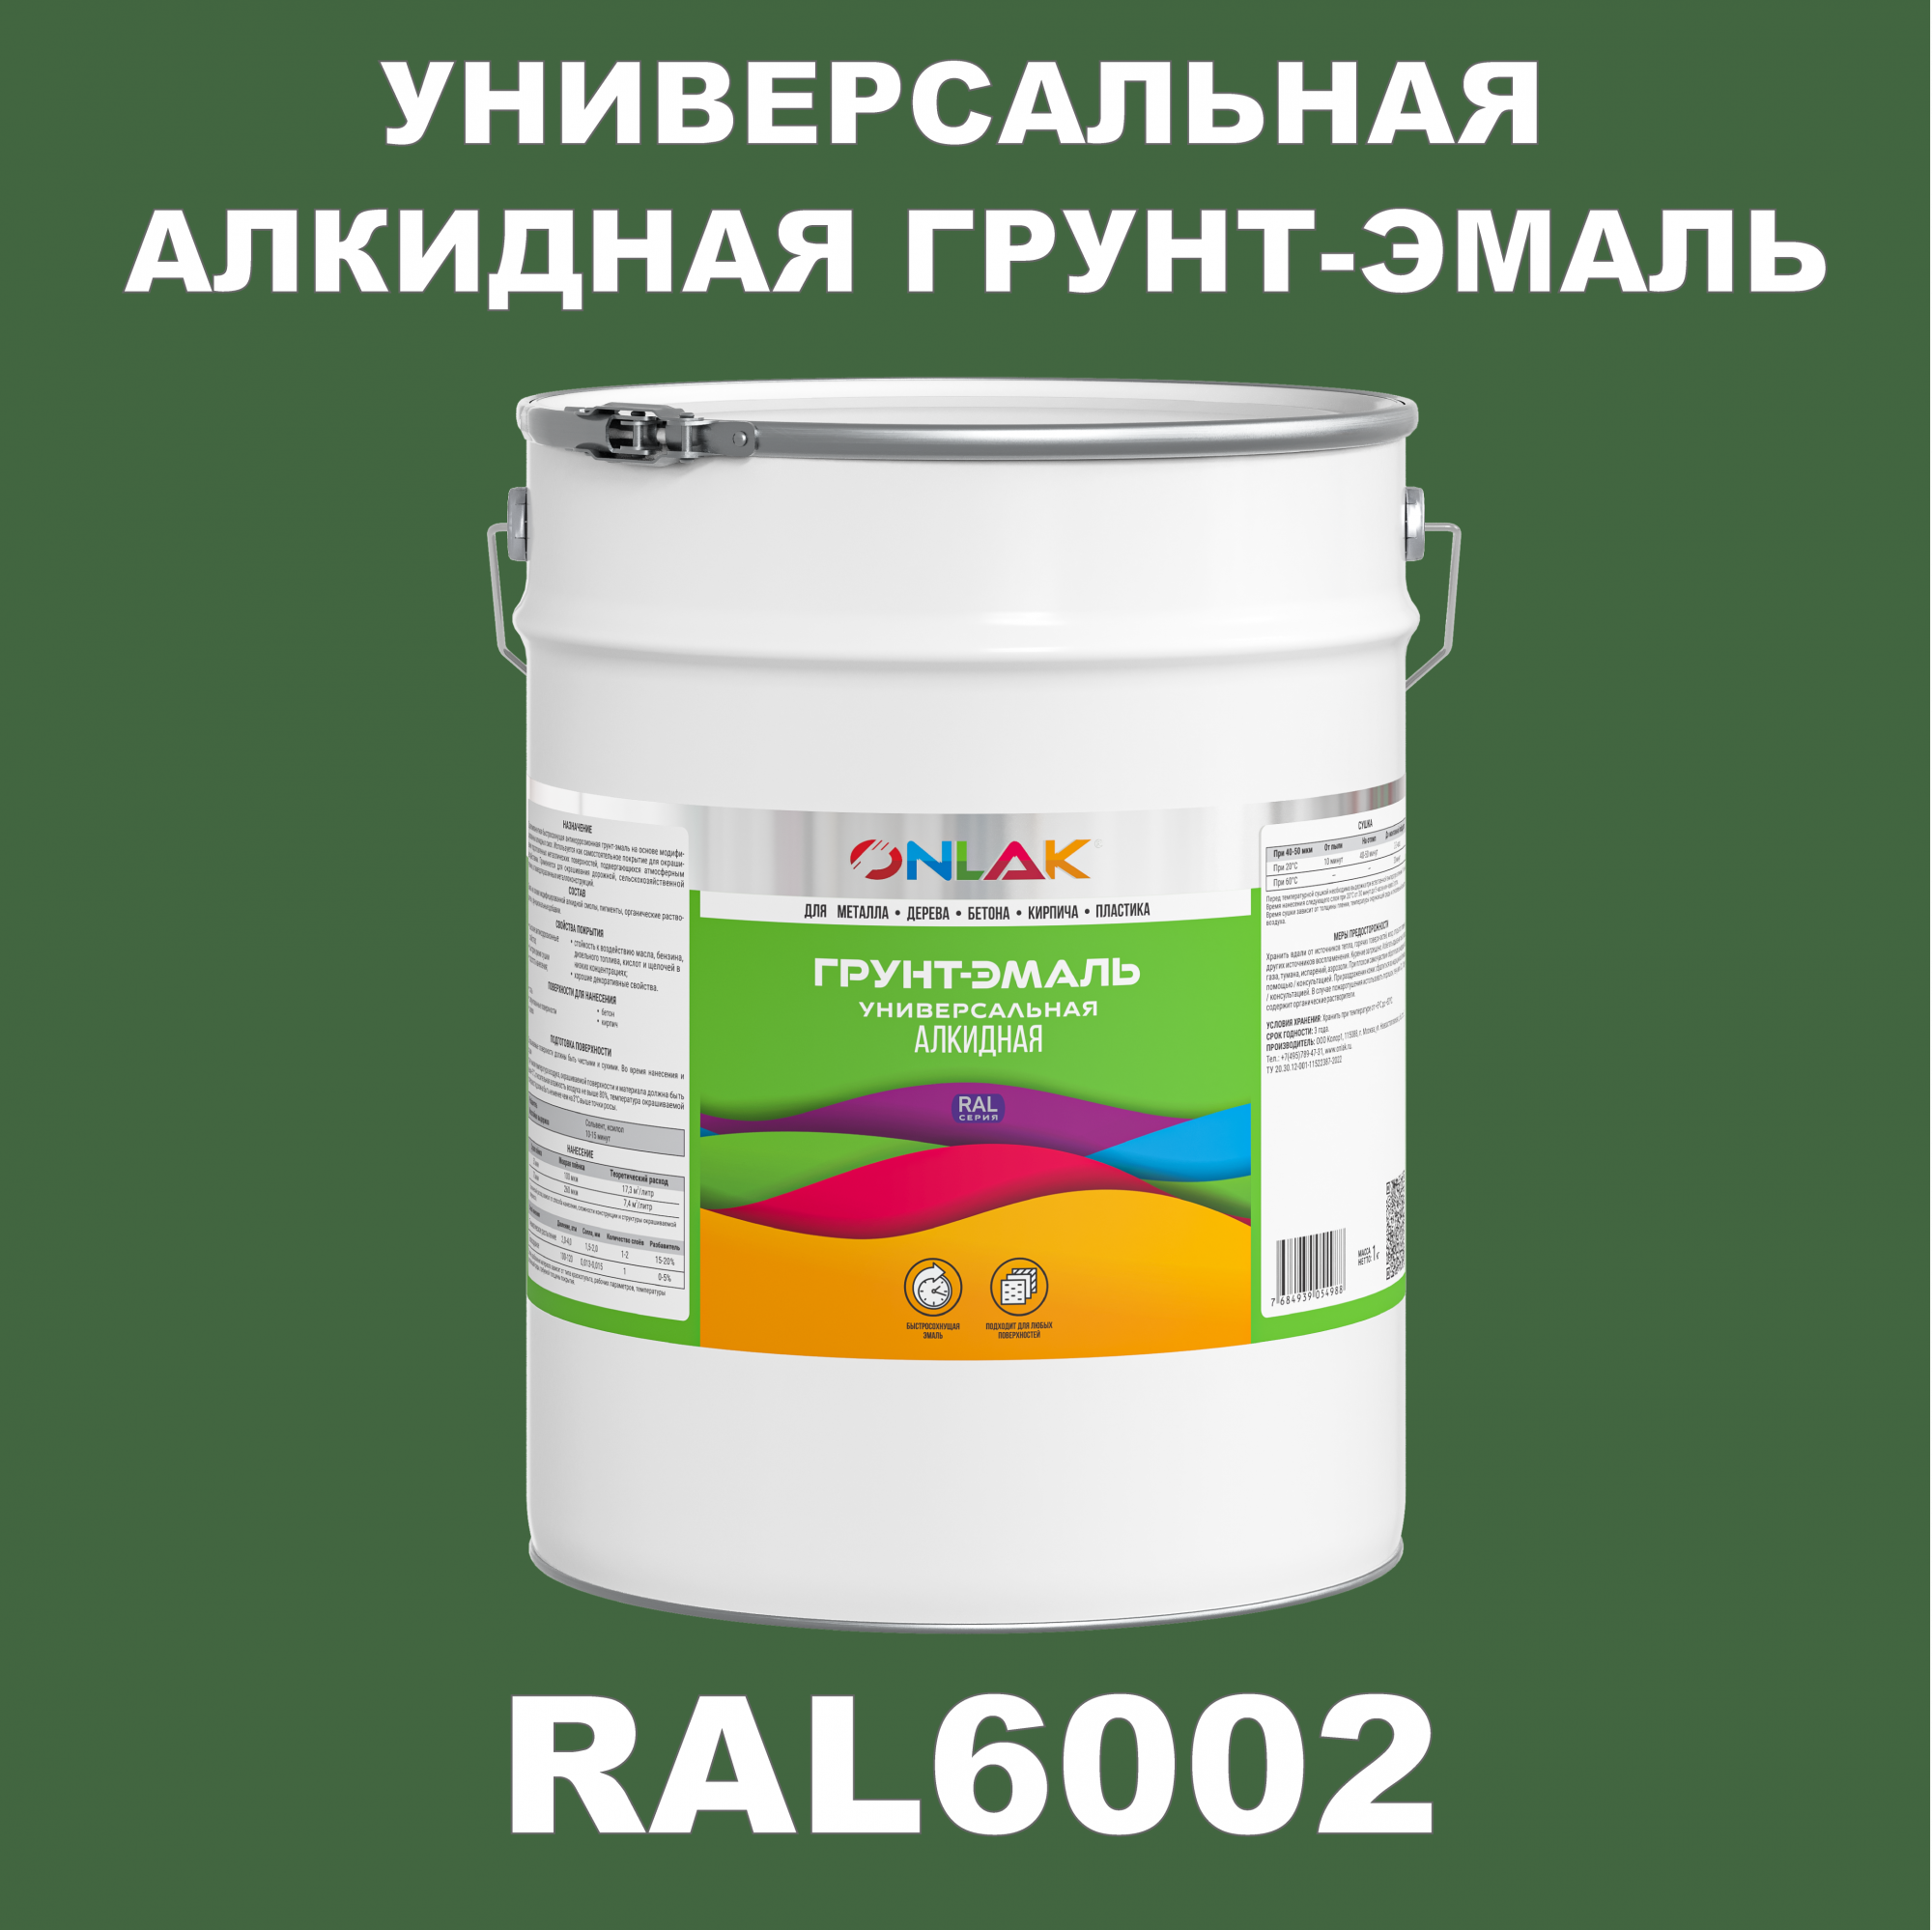 Грунт-эмаль ONLAK 1К RAL6002 антикоррозионная алкидная по металлу по ржавчине 20 кг грунт эмаль аэрозольная престиж 3в1 алкидная коричневая ral 8017 425 мл 0 425 кг